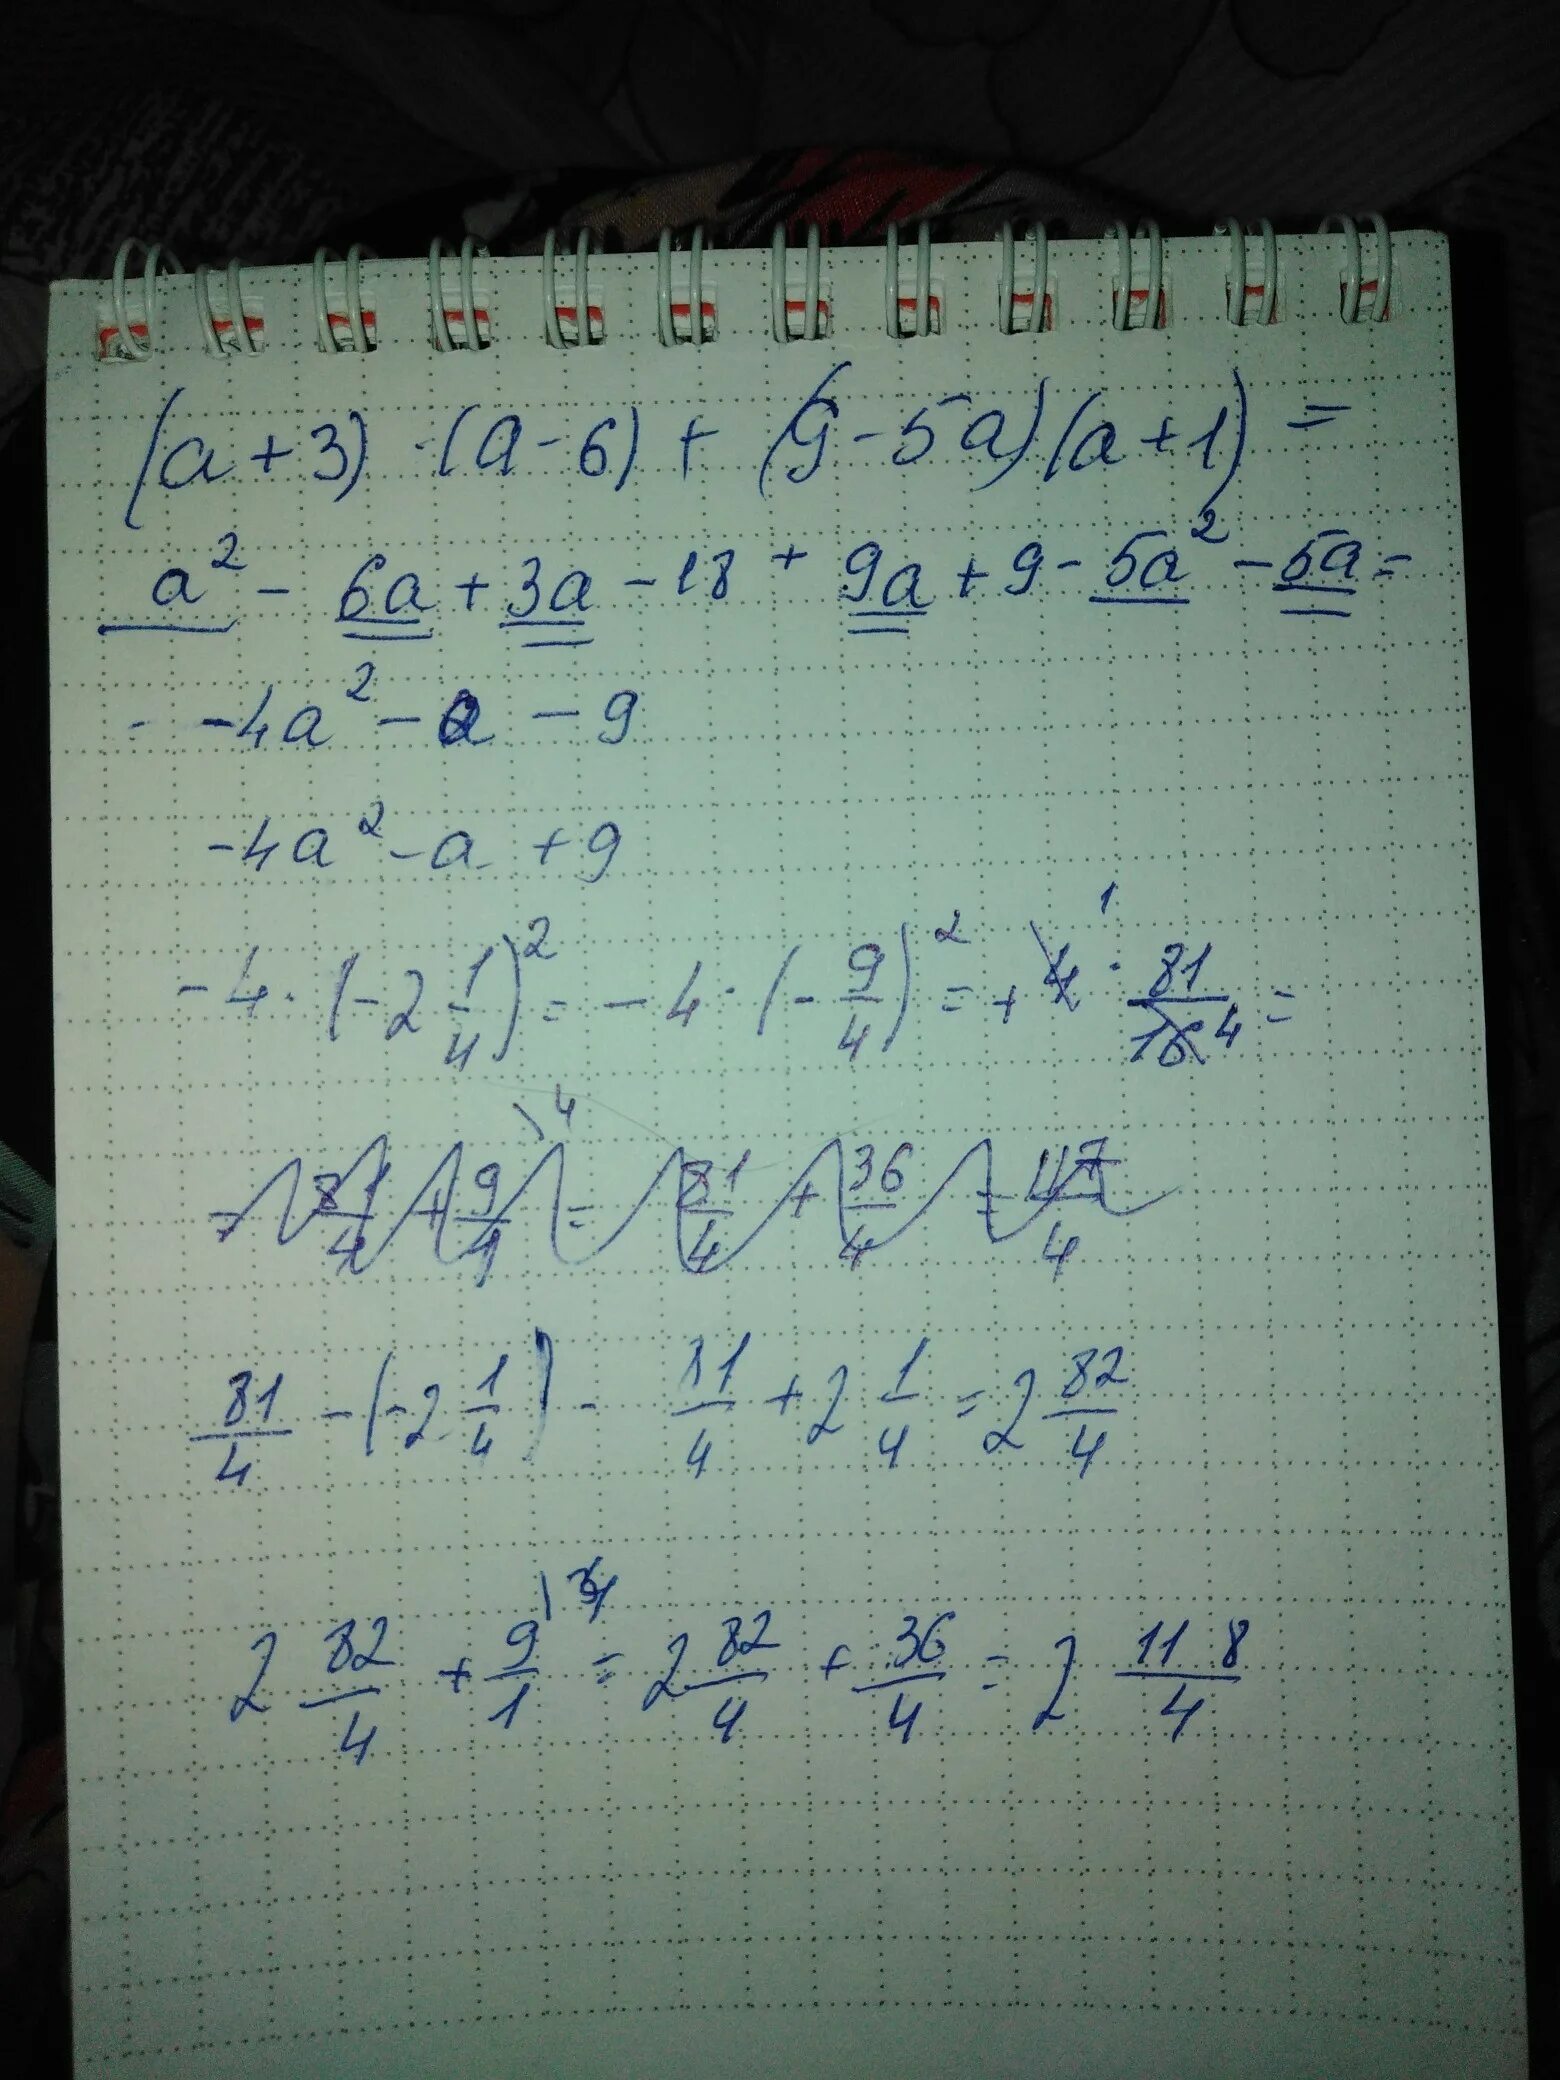 2 5 2х 7 5 6х. 3х2,5. -7х3(х5+3х). 49 Х 1 1/7 Х. Упростите выражение 4х(х-7)(х+7)+(3х+5)².